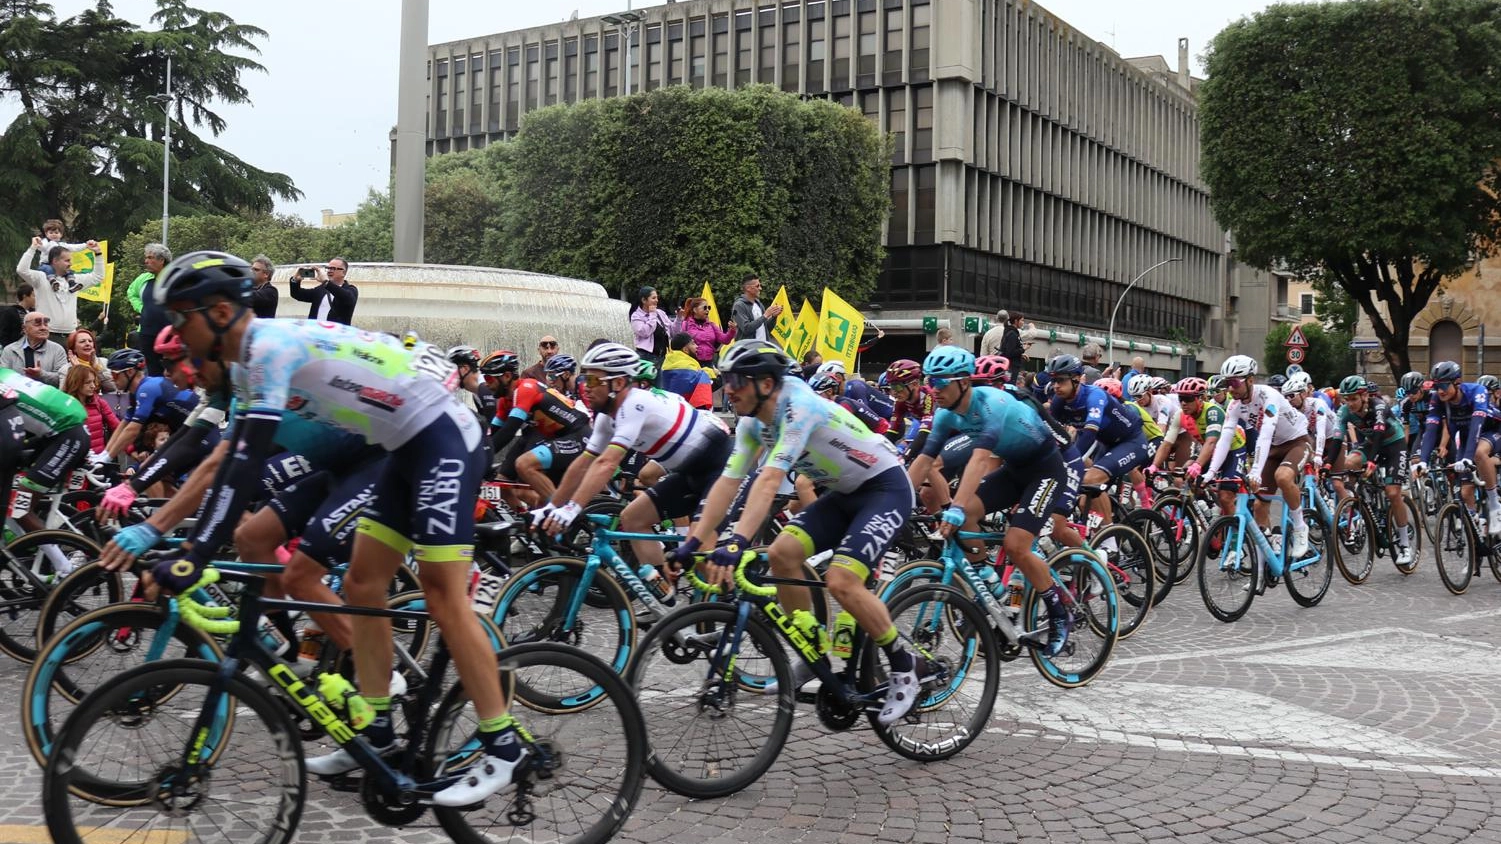 Umbria, la vita è rosa  La passione e la festa:  folla, applausi, sorrisi  per il Giro d’Italia